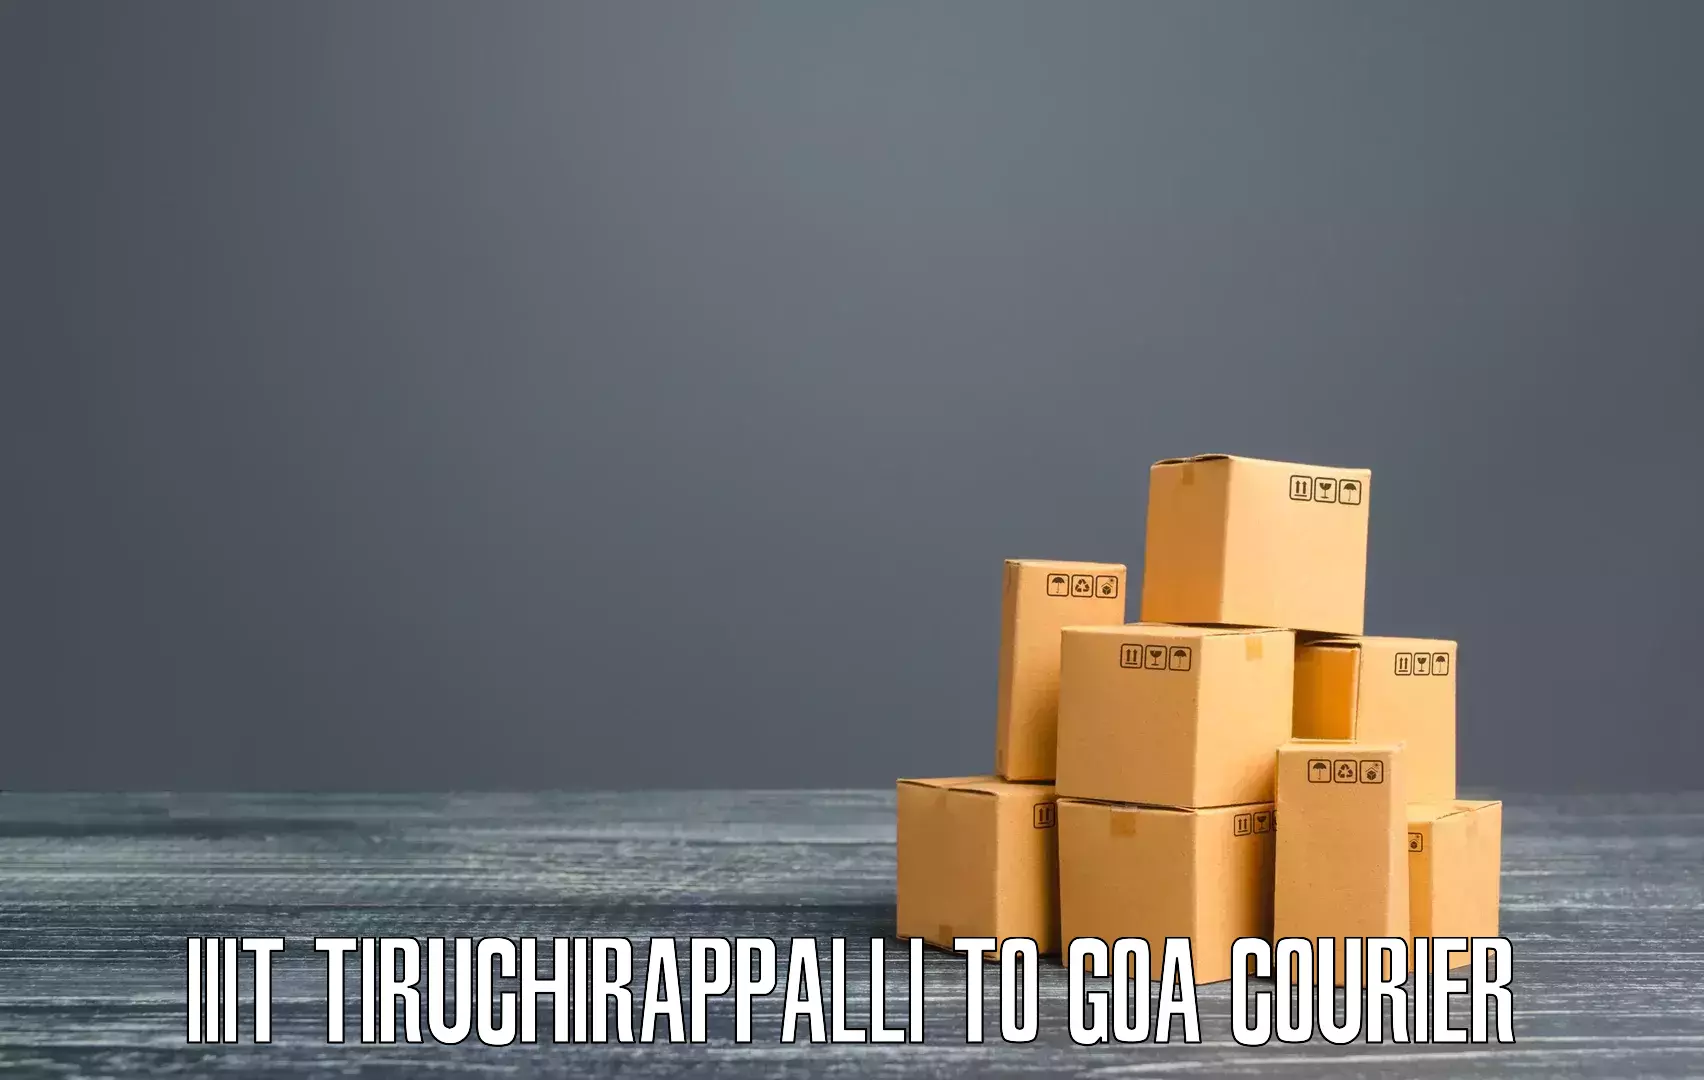 Sustainable shipping practices in IIIT Tiruchirappalli to Goa